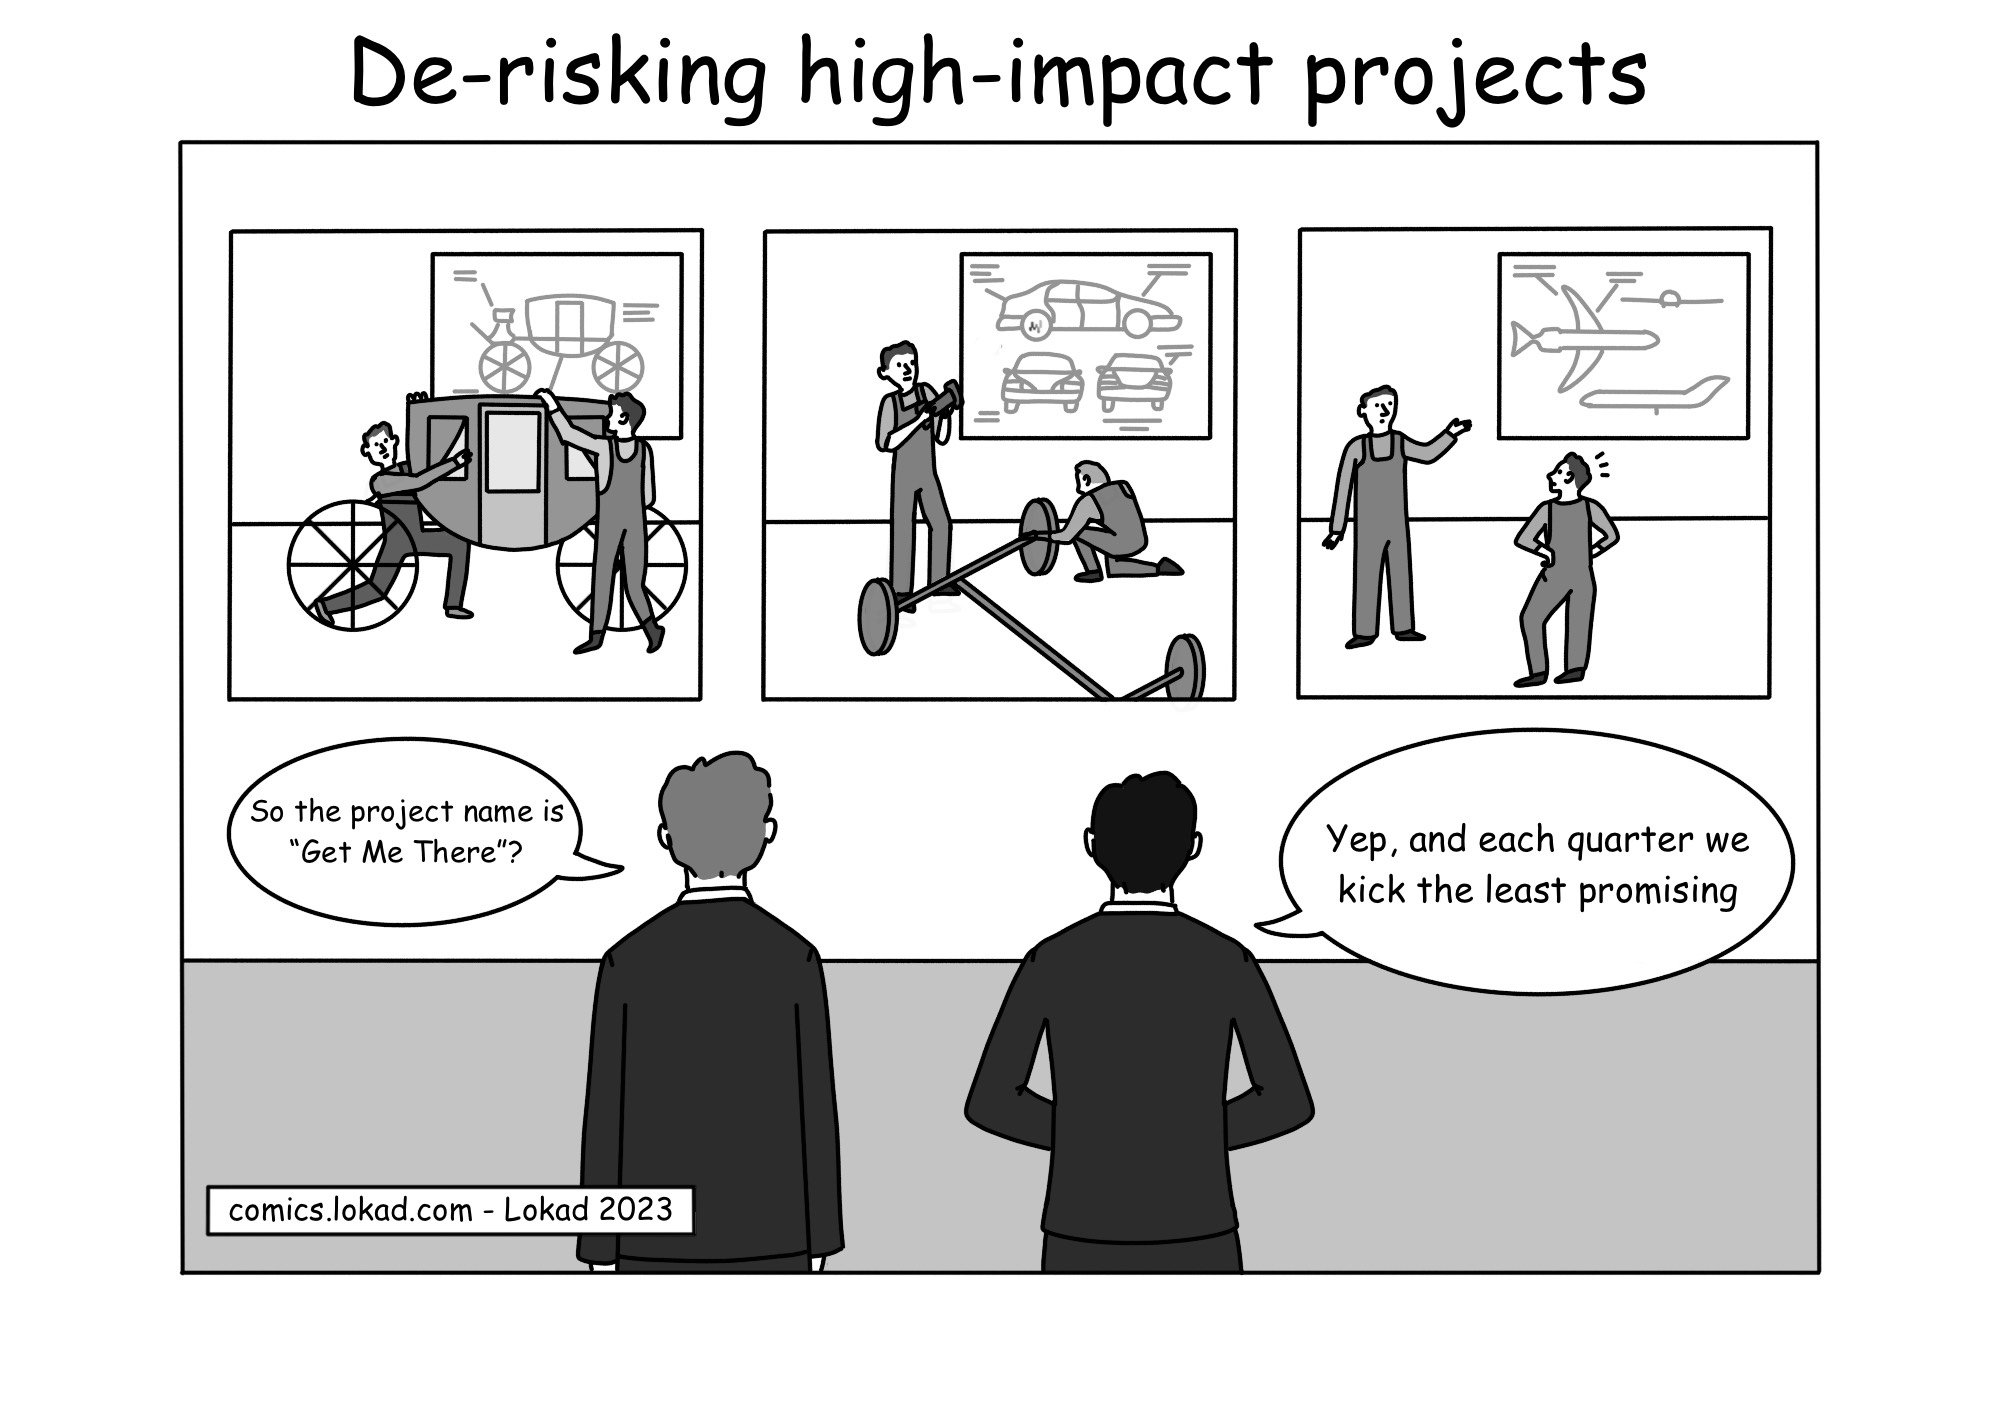 Комикс о снижении рисков высокоэффективных проектов